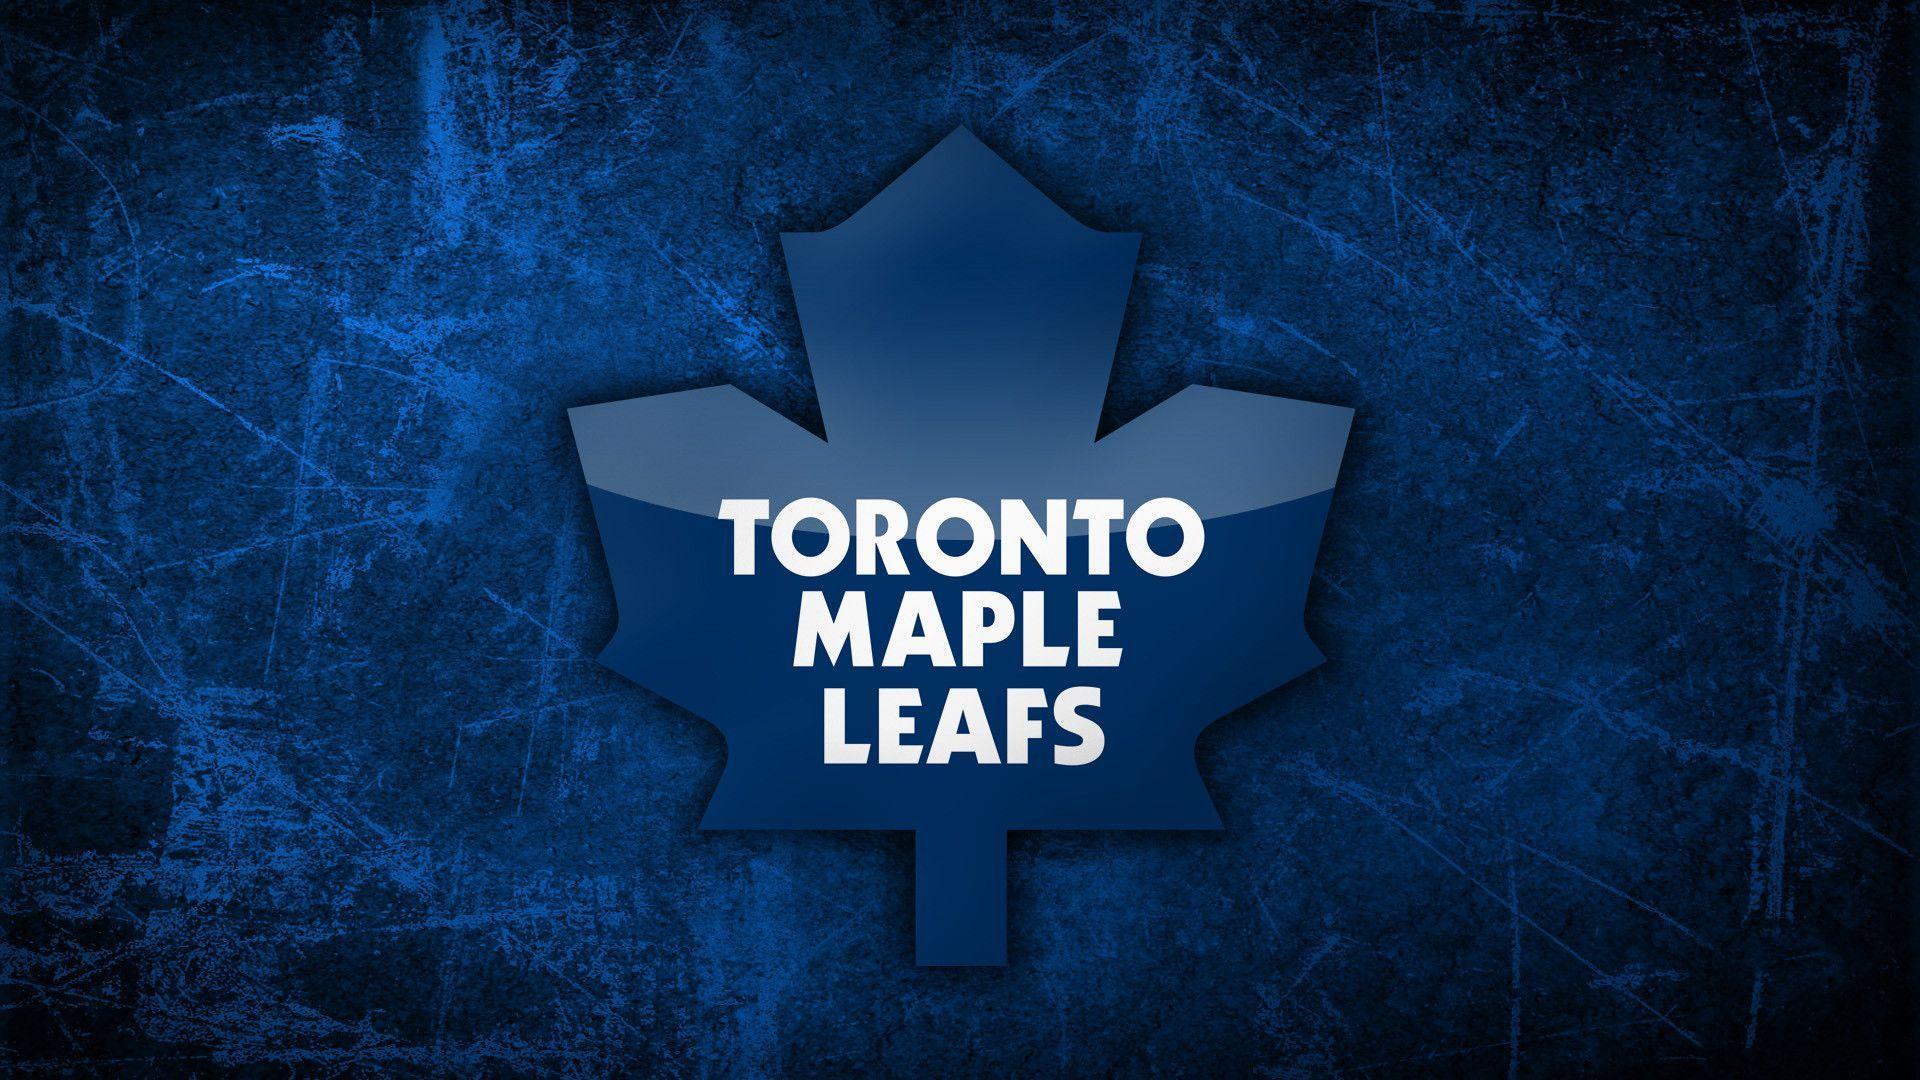 Enjoy this new Toronto Maple Leafs desktop background. Toronto